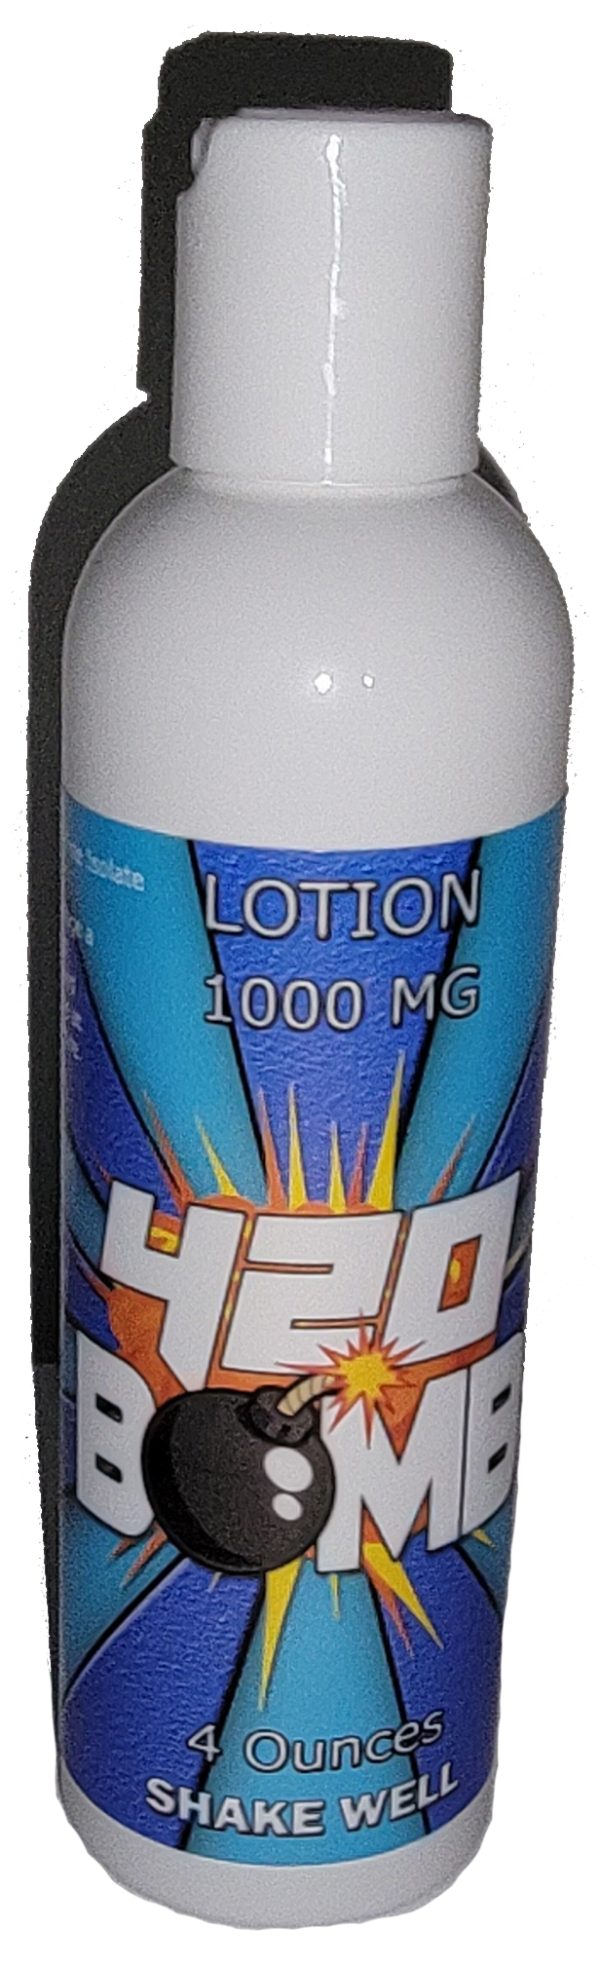 1000 mg Lotion